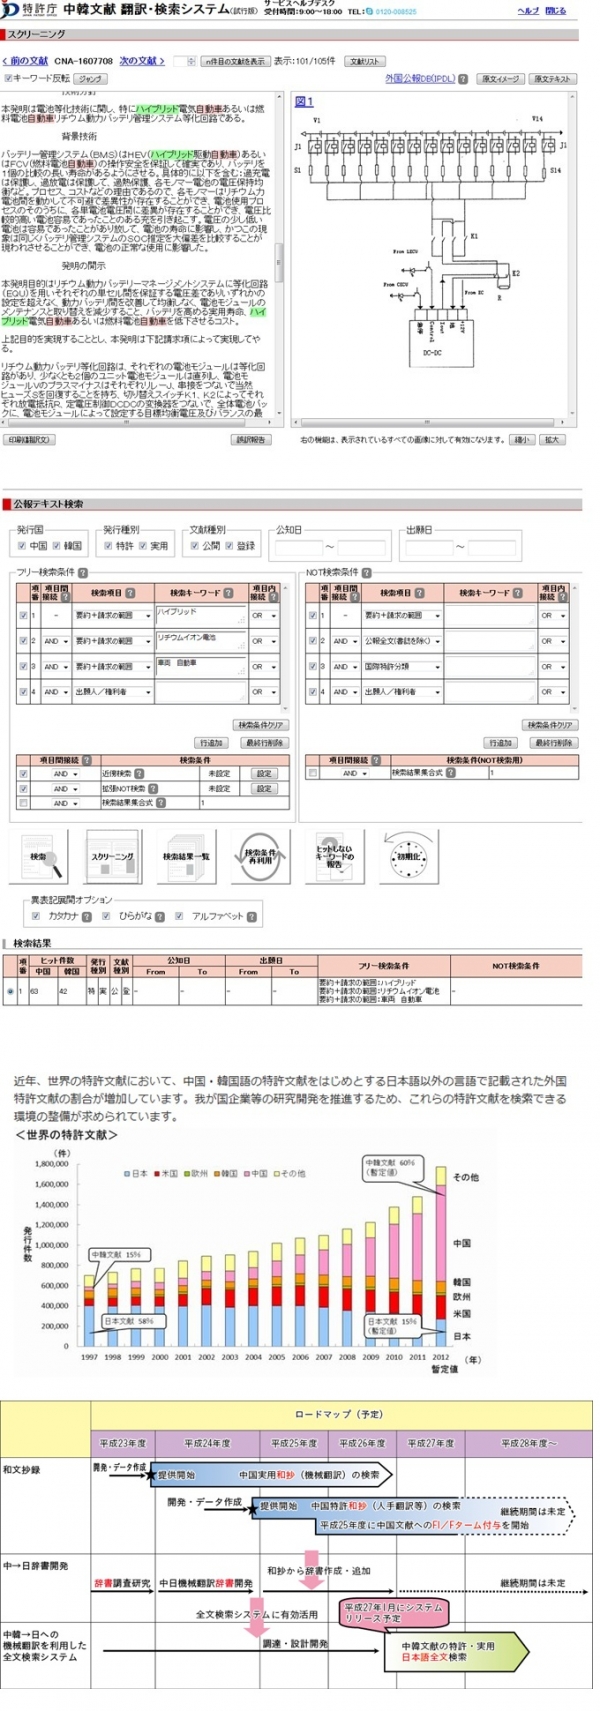 【中国・韓国】 中韓文献 機械翻訳・検索システム（試行版）が本日より利用可能に